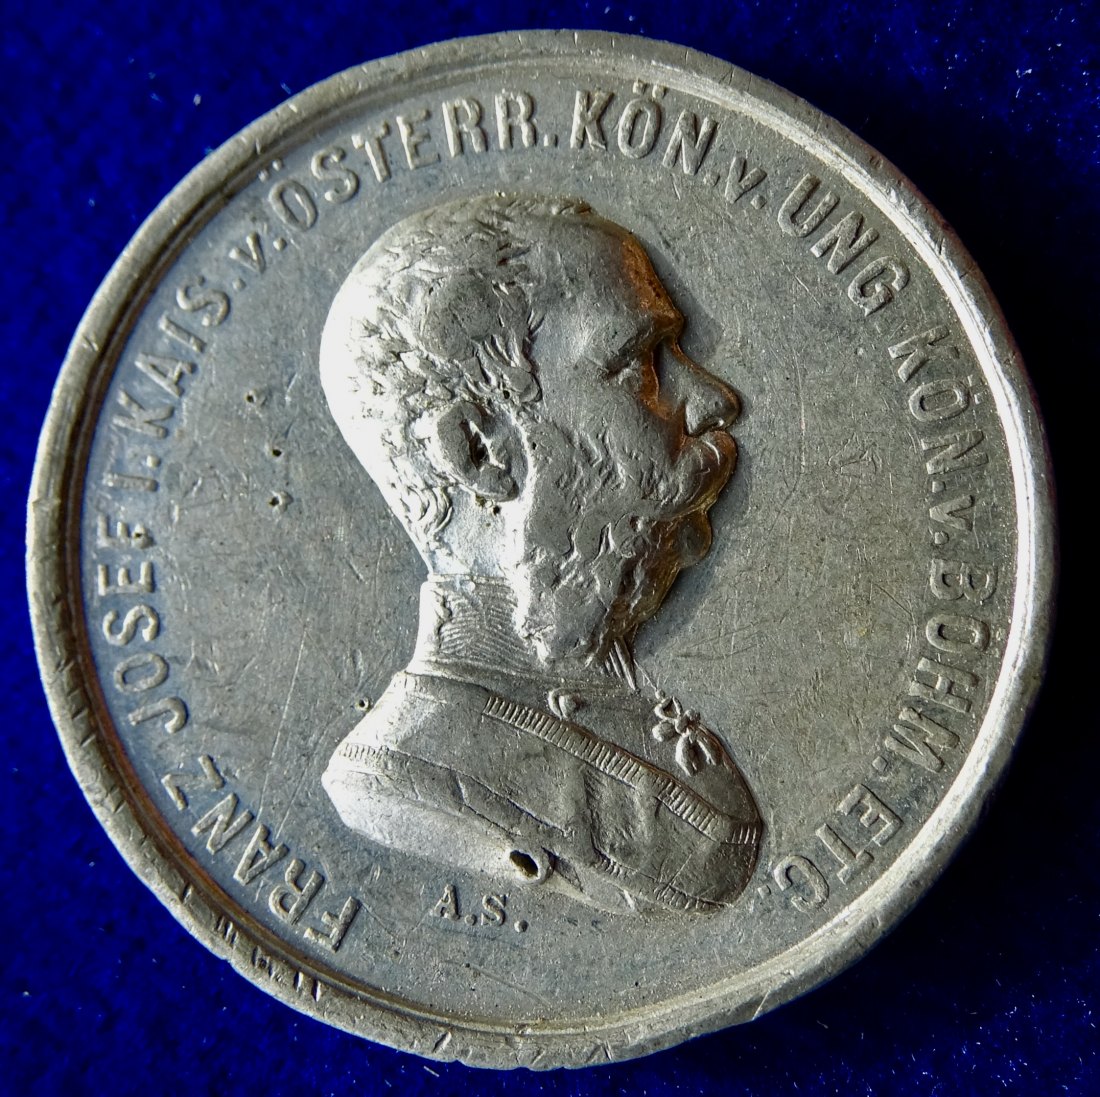  Wien Weltausstellung 1873 Medaille von Anton Scharff   